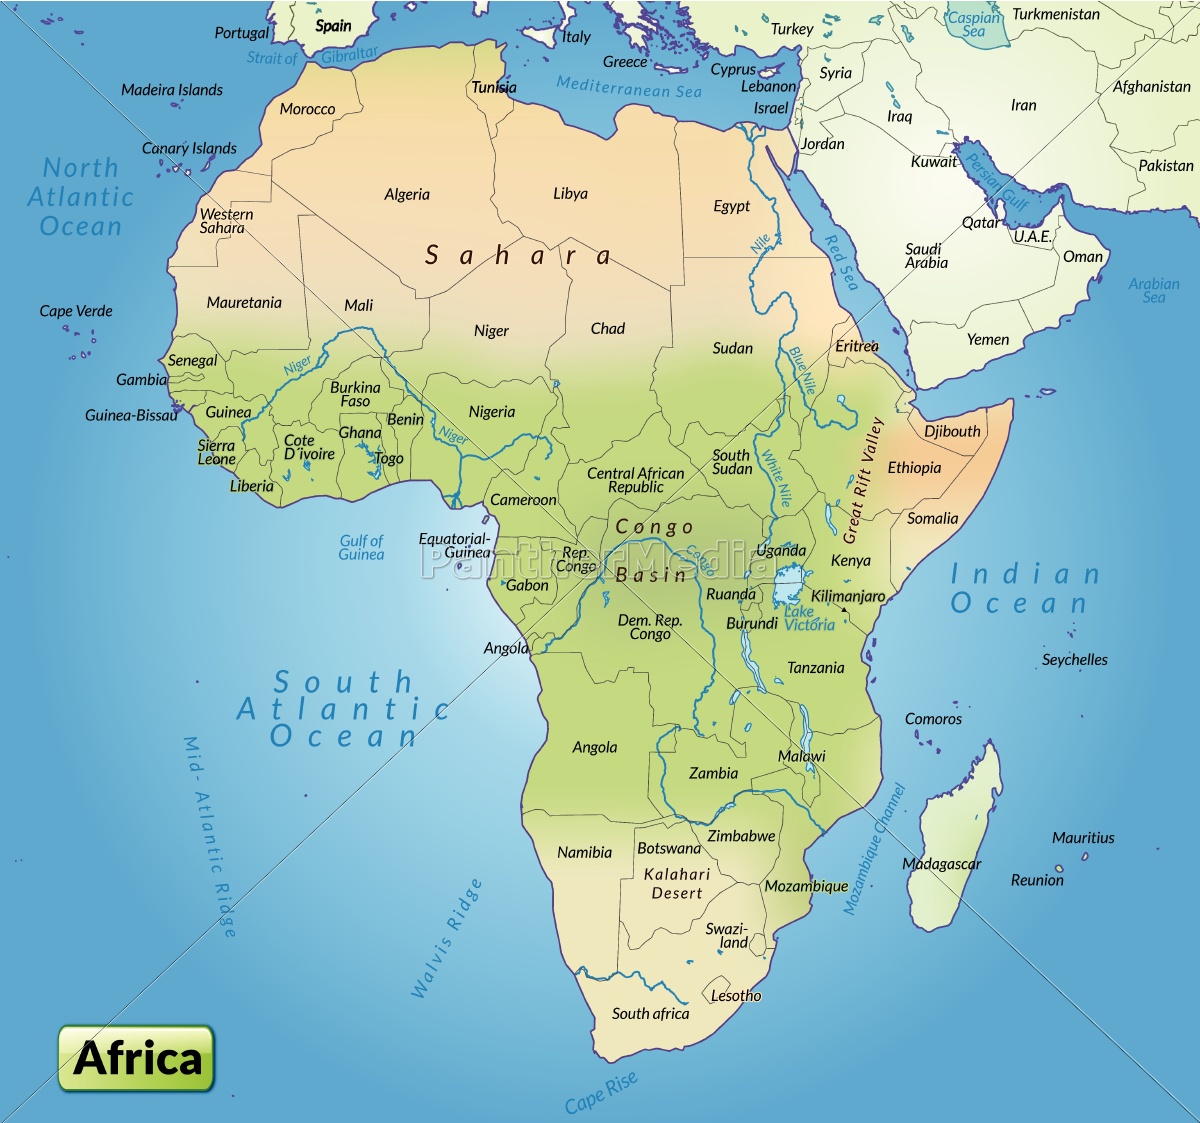 Afrika Kort kort over afrika som et oversigtskort   Royalty Free Image  Afrika Kort